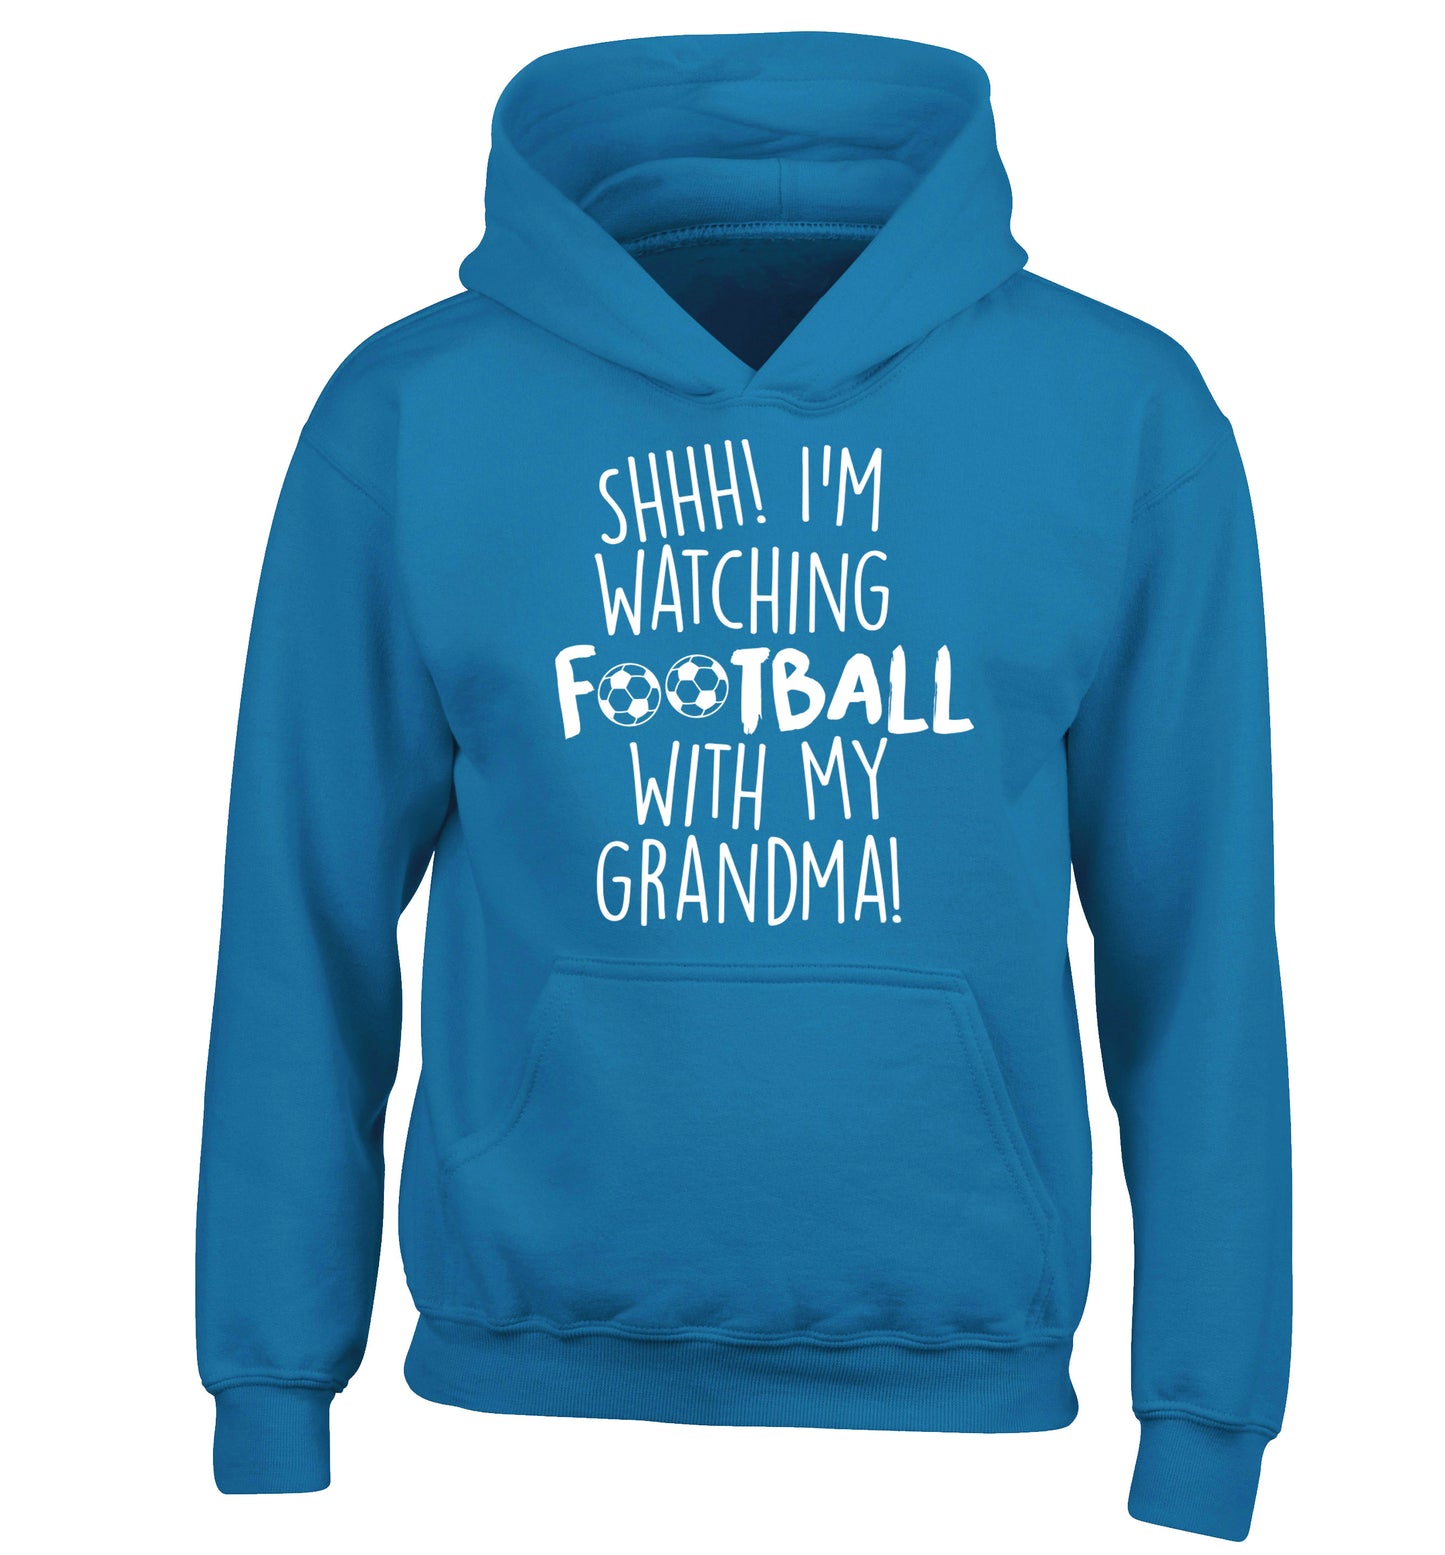 Shhh I'm watching football with my grandma children's blue hoodie 12-14 Years